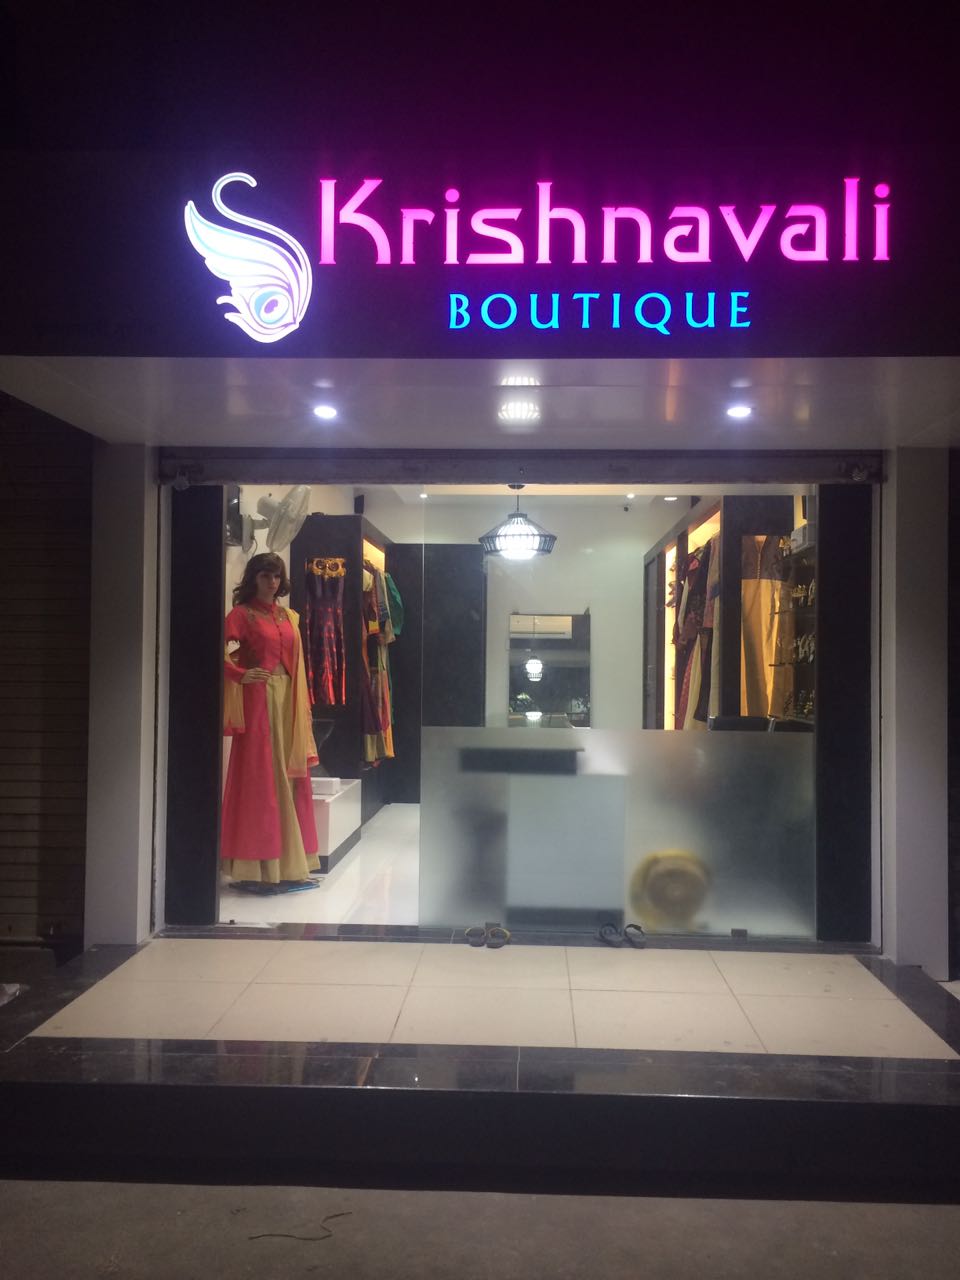 Krishnavali Boutique